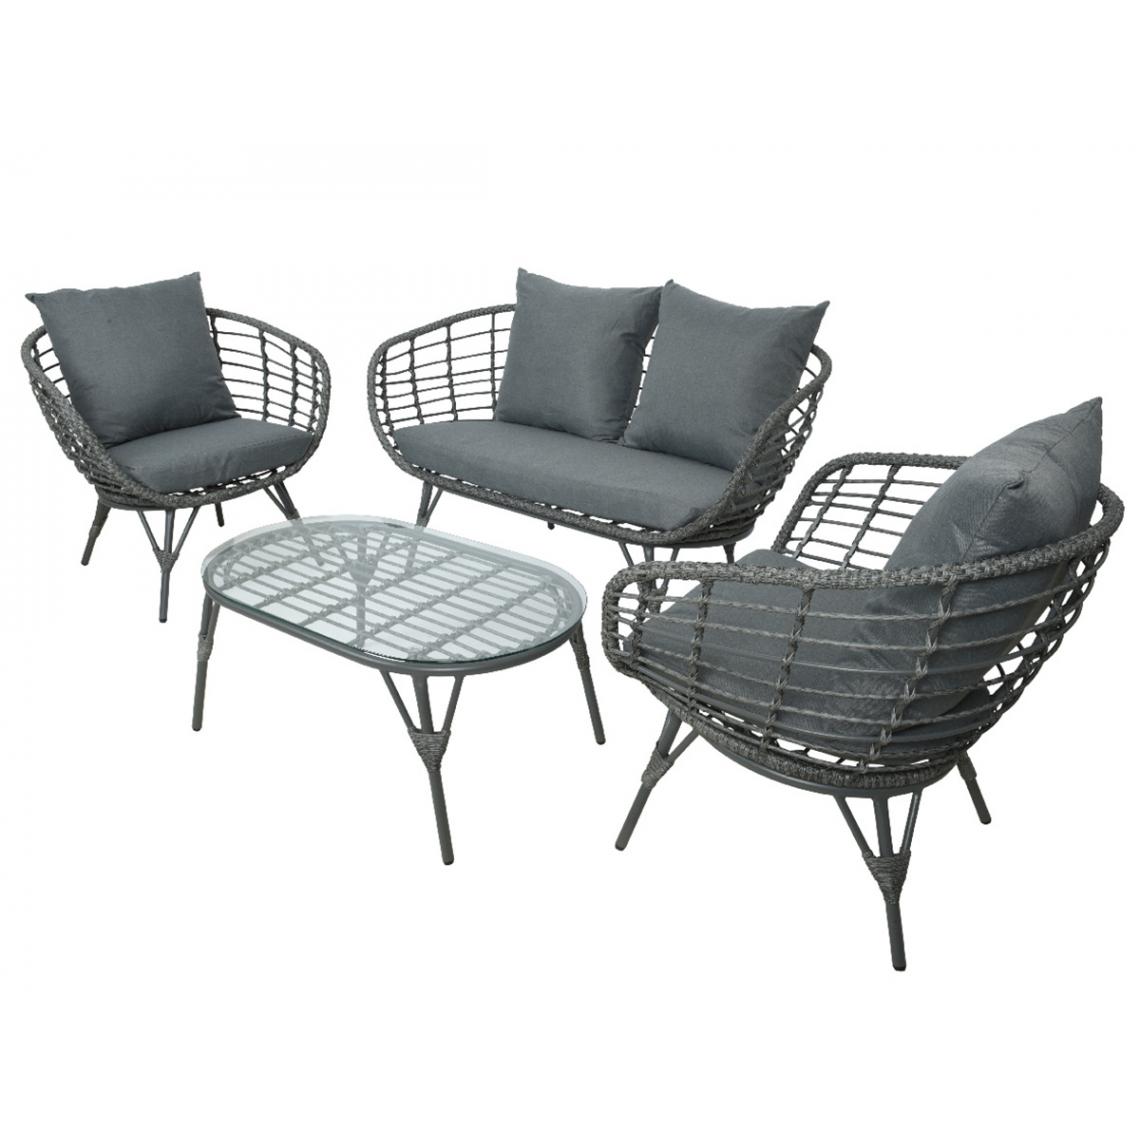 Jardideco - Salon de jardin en résine tressée gris Evora avec table basse - 4 places - Ensembles canapés et fauteuils